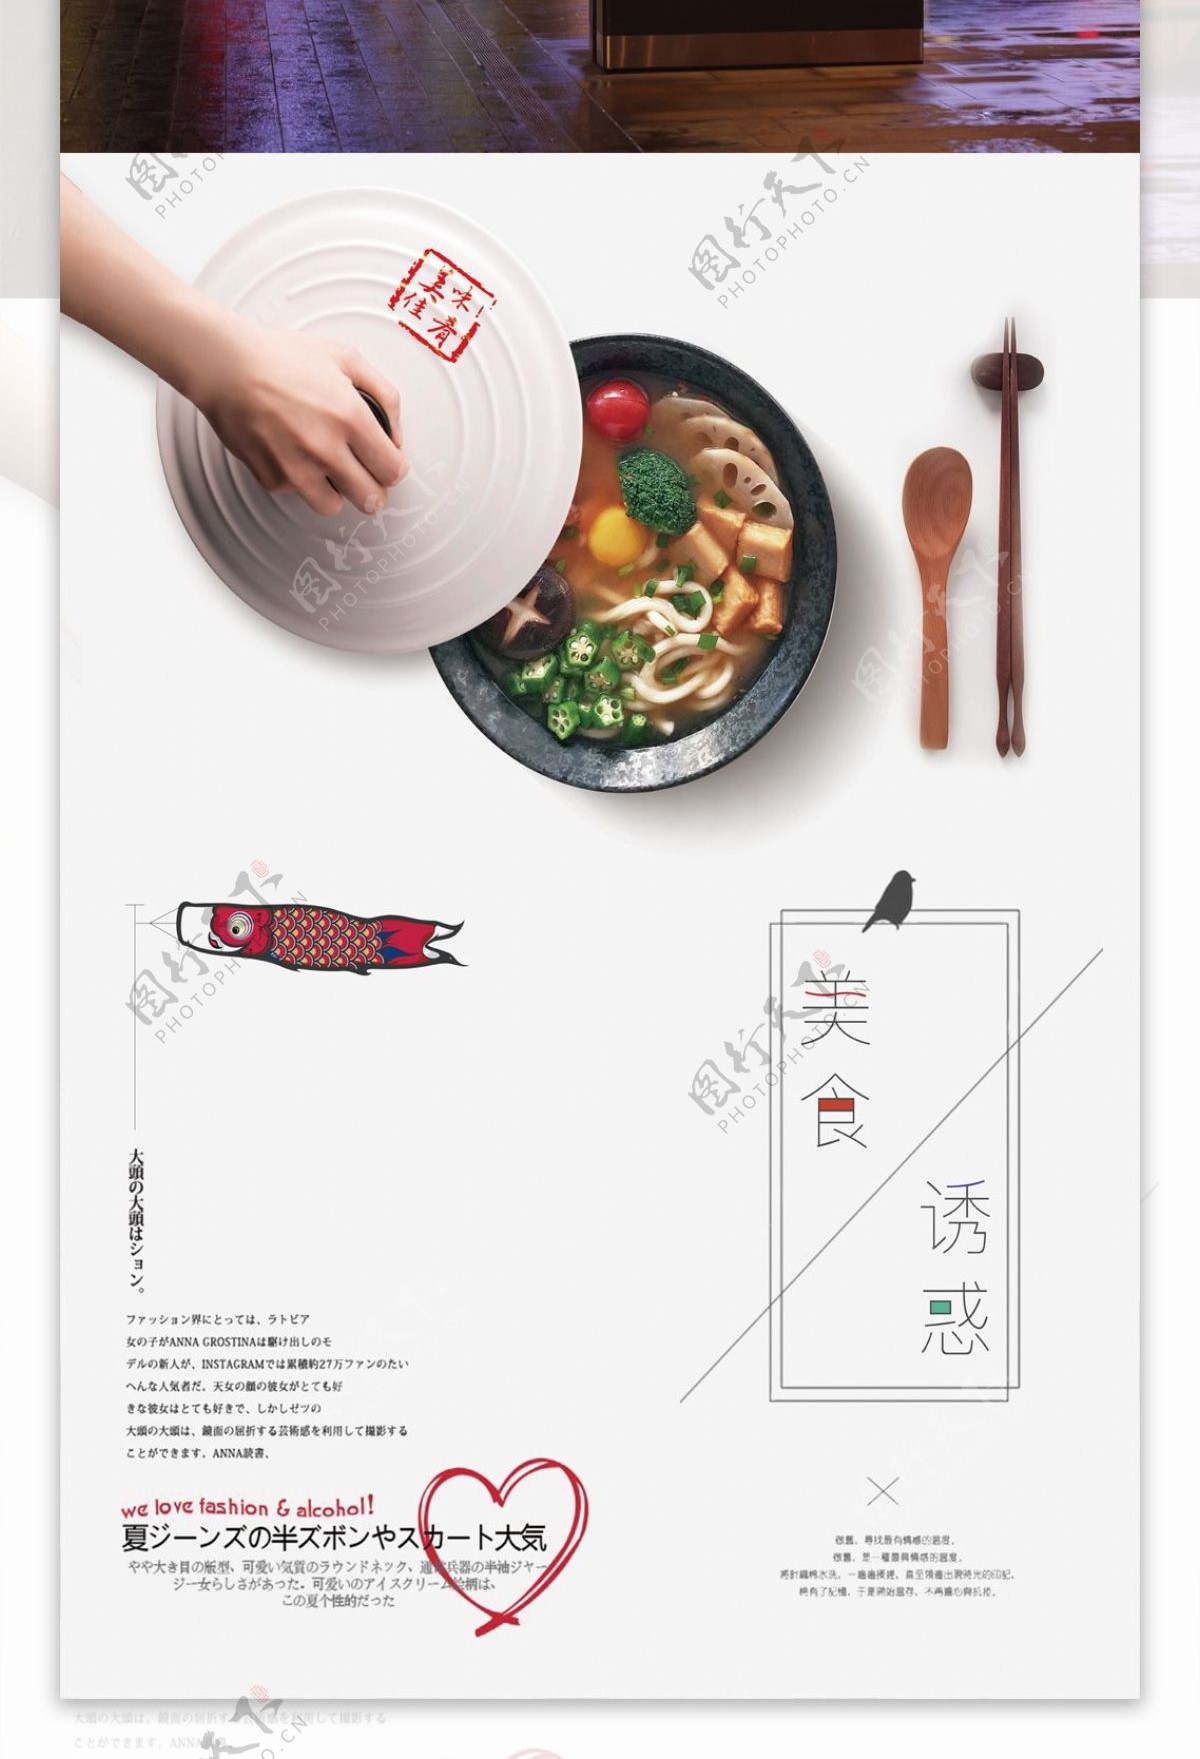 日系美食海报创意设计